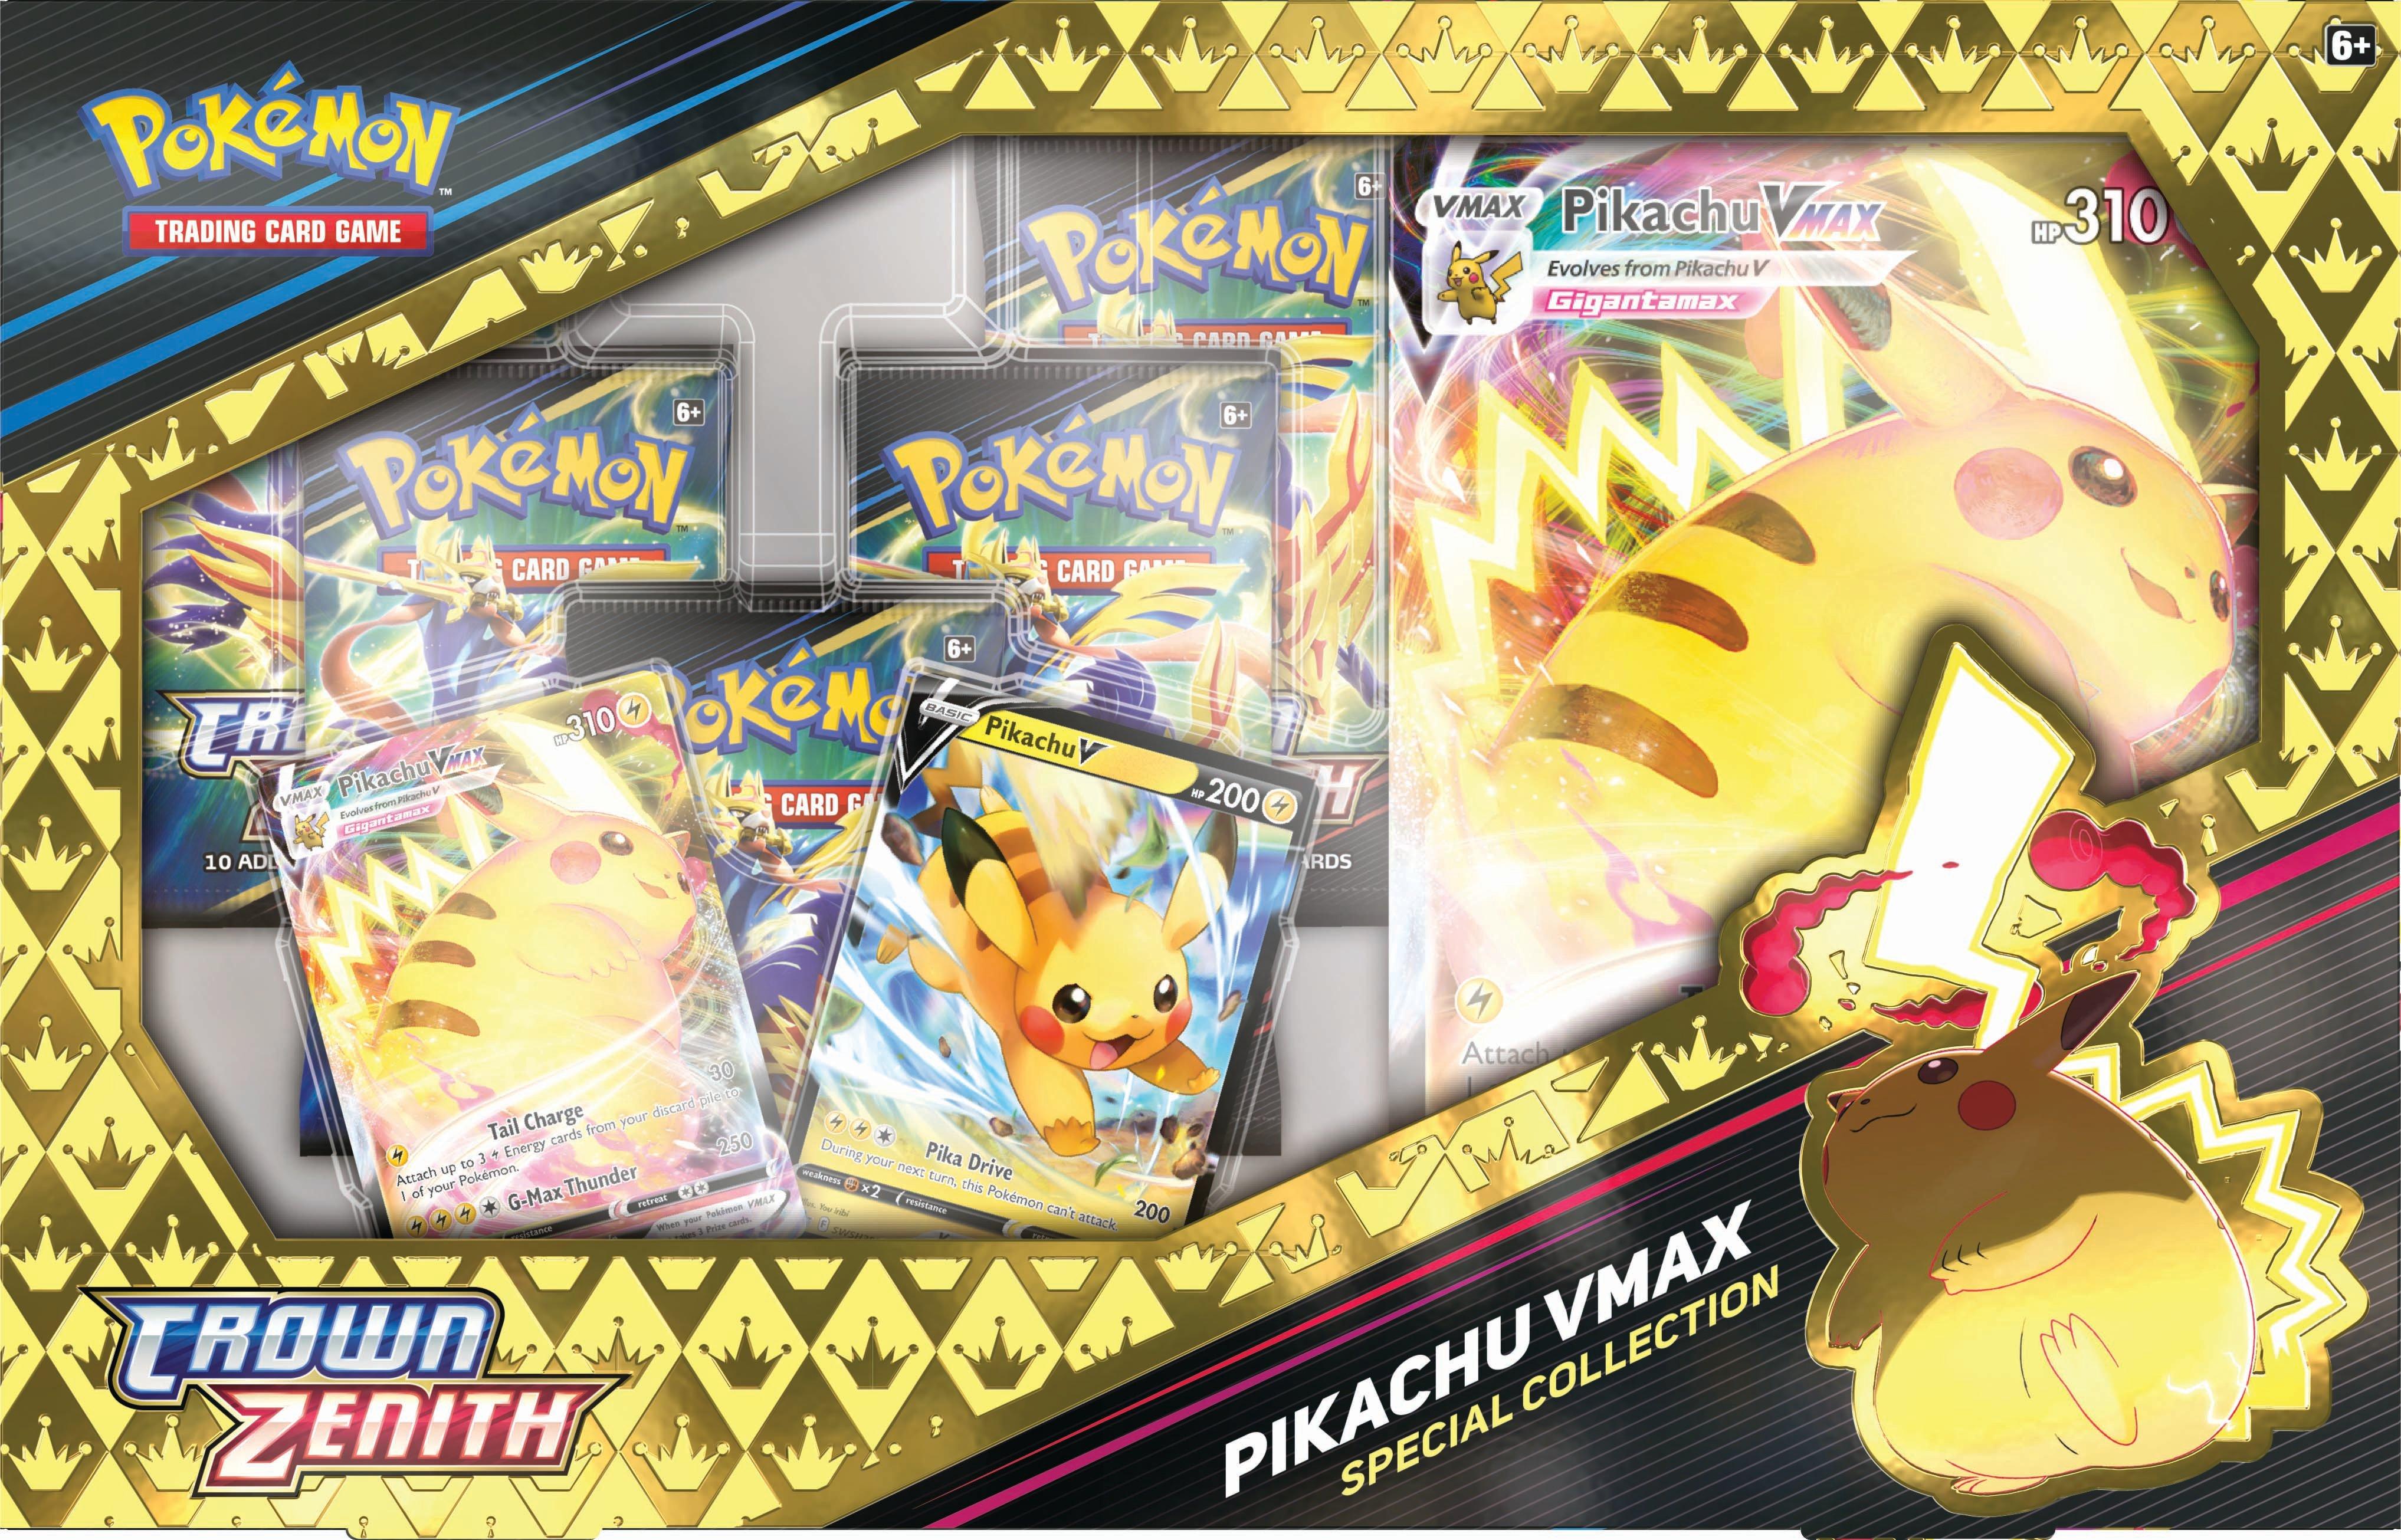 Zenith supreme premium collection - Pikachu VMAX - Pokemon TCG